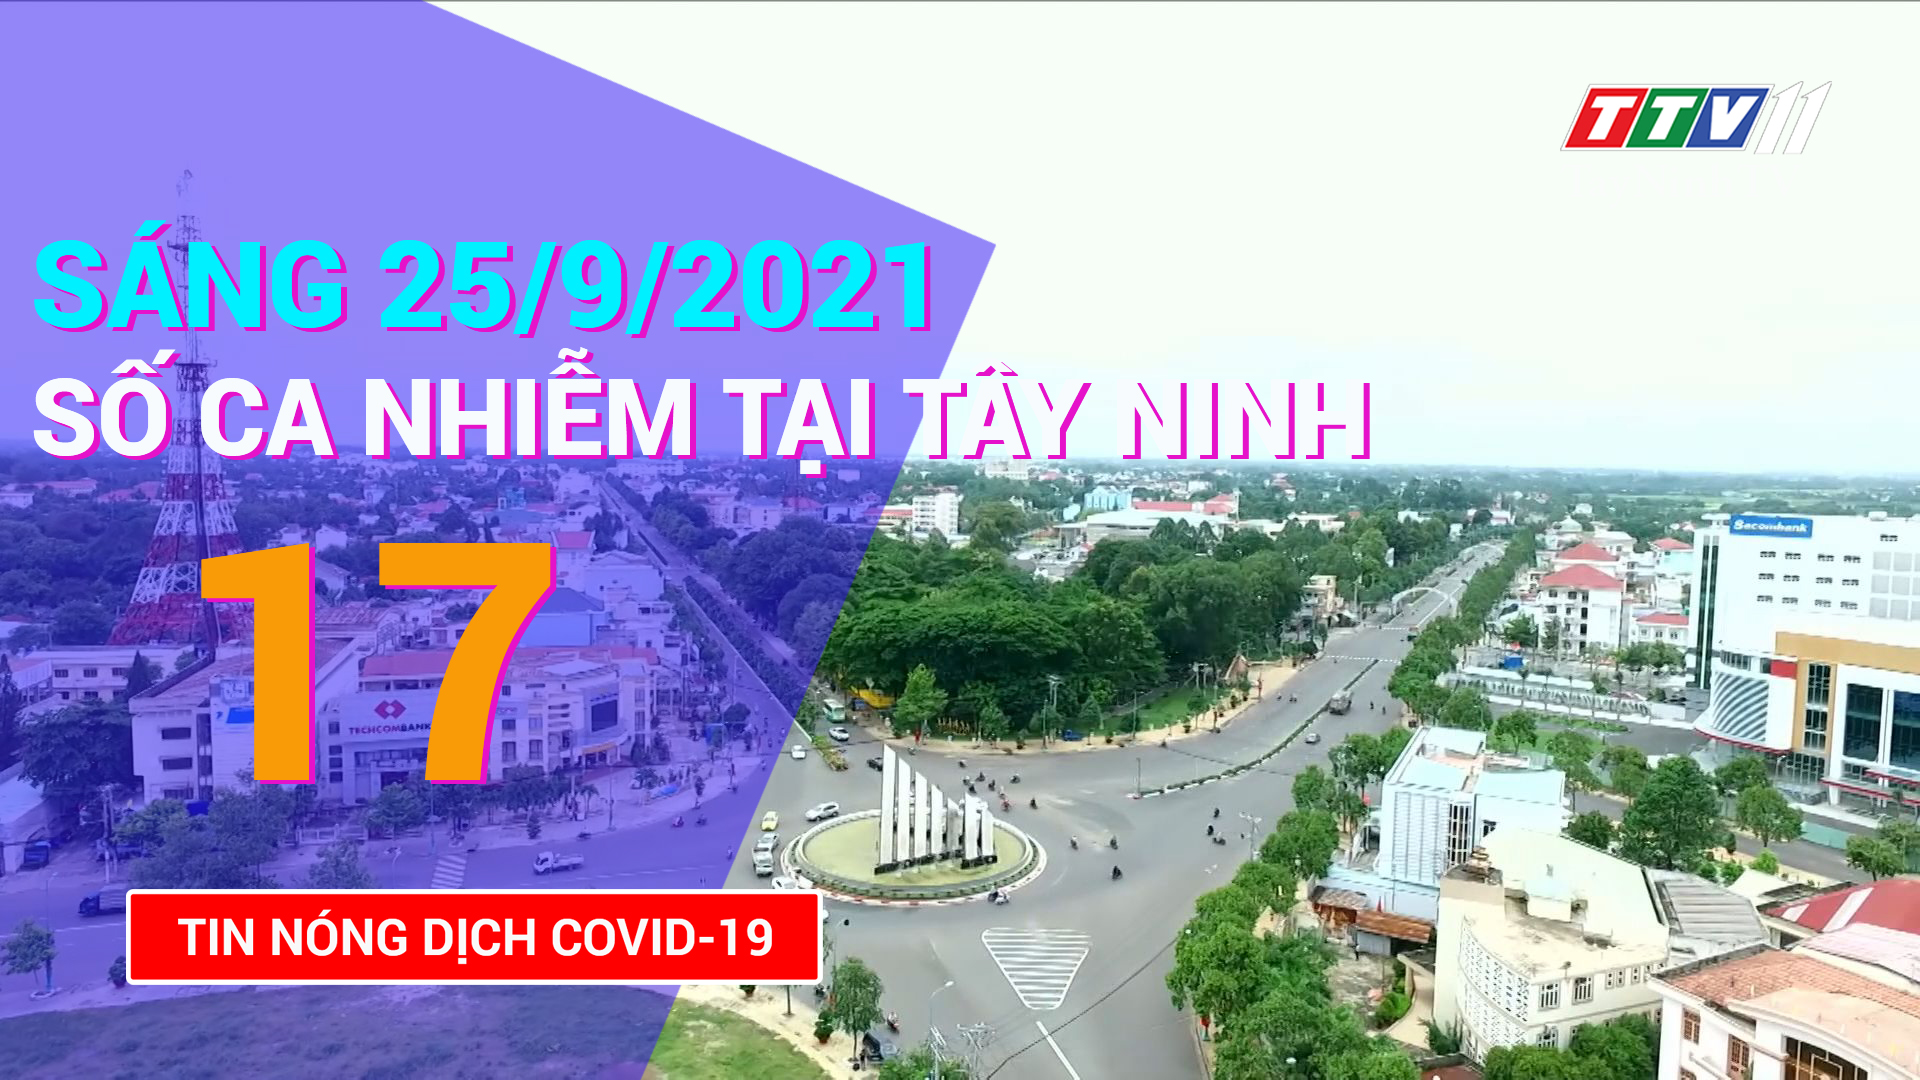 Tin tức Covid-19 sáng 25/9/2021 | TayNinhTV